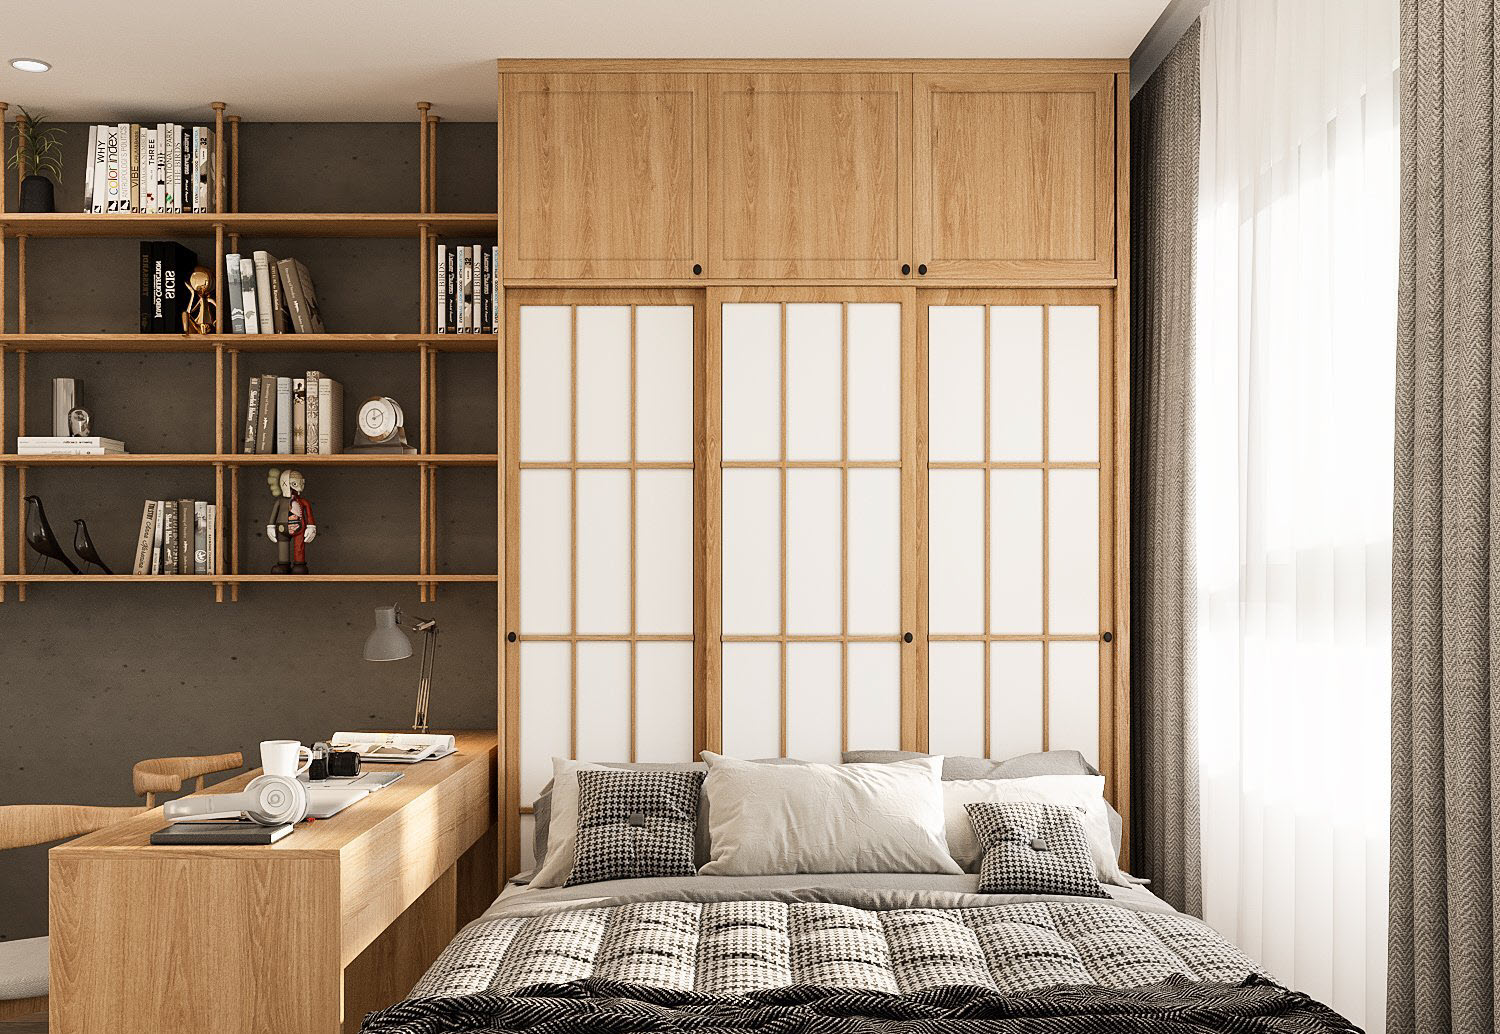 Phòng ngủ thứ hai với thiết kế nội thất tương tự. Tông màu trắng - xám trung tính cho sơn tường, rèm cửa, ga gối kết hợp ăn ý cùng nội thát gỗ kiểu Nhật.